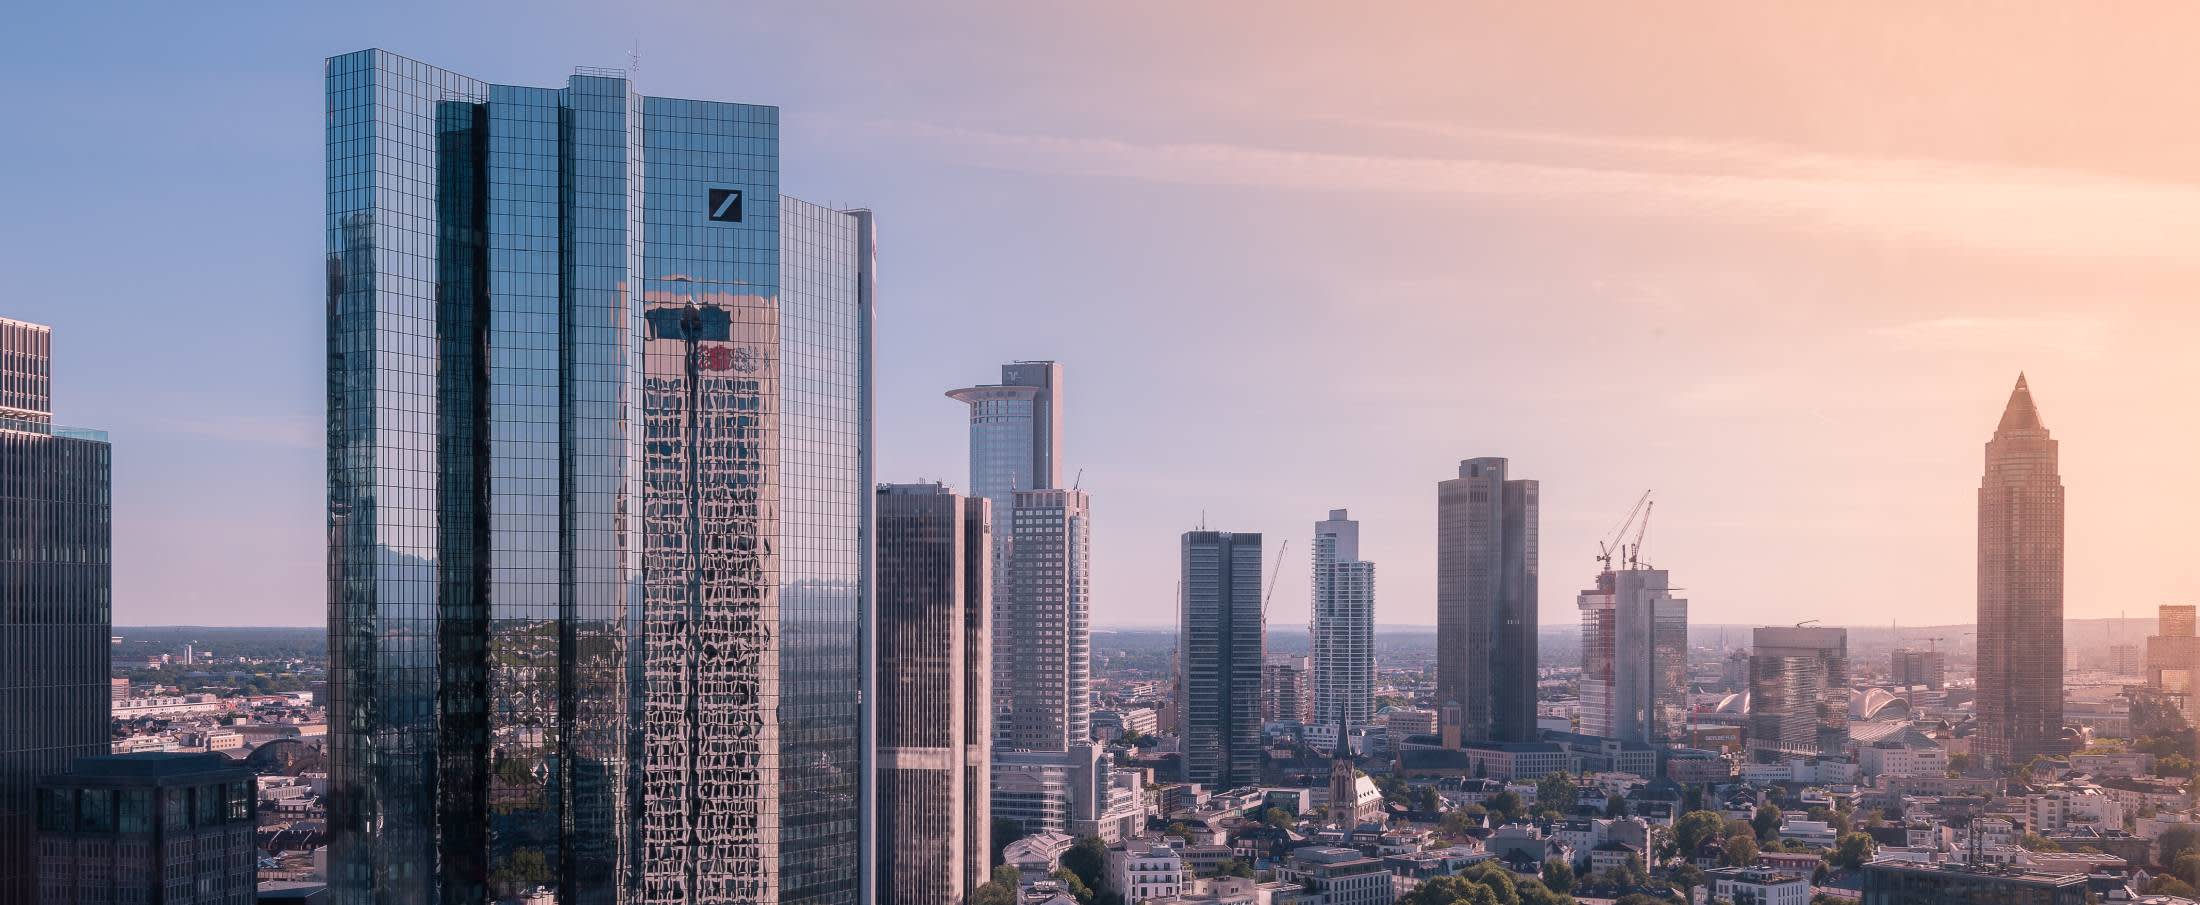 Deutsche Bank tower in Frankfurt